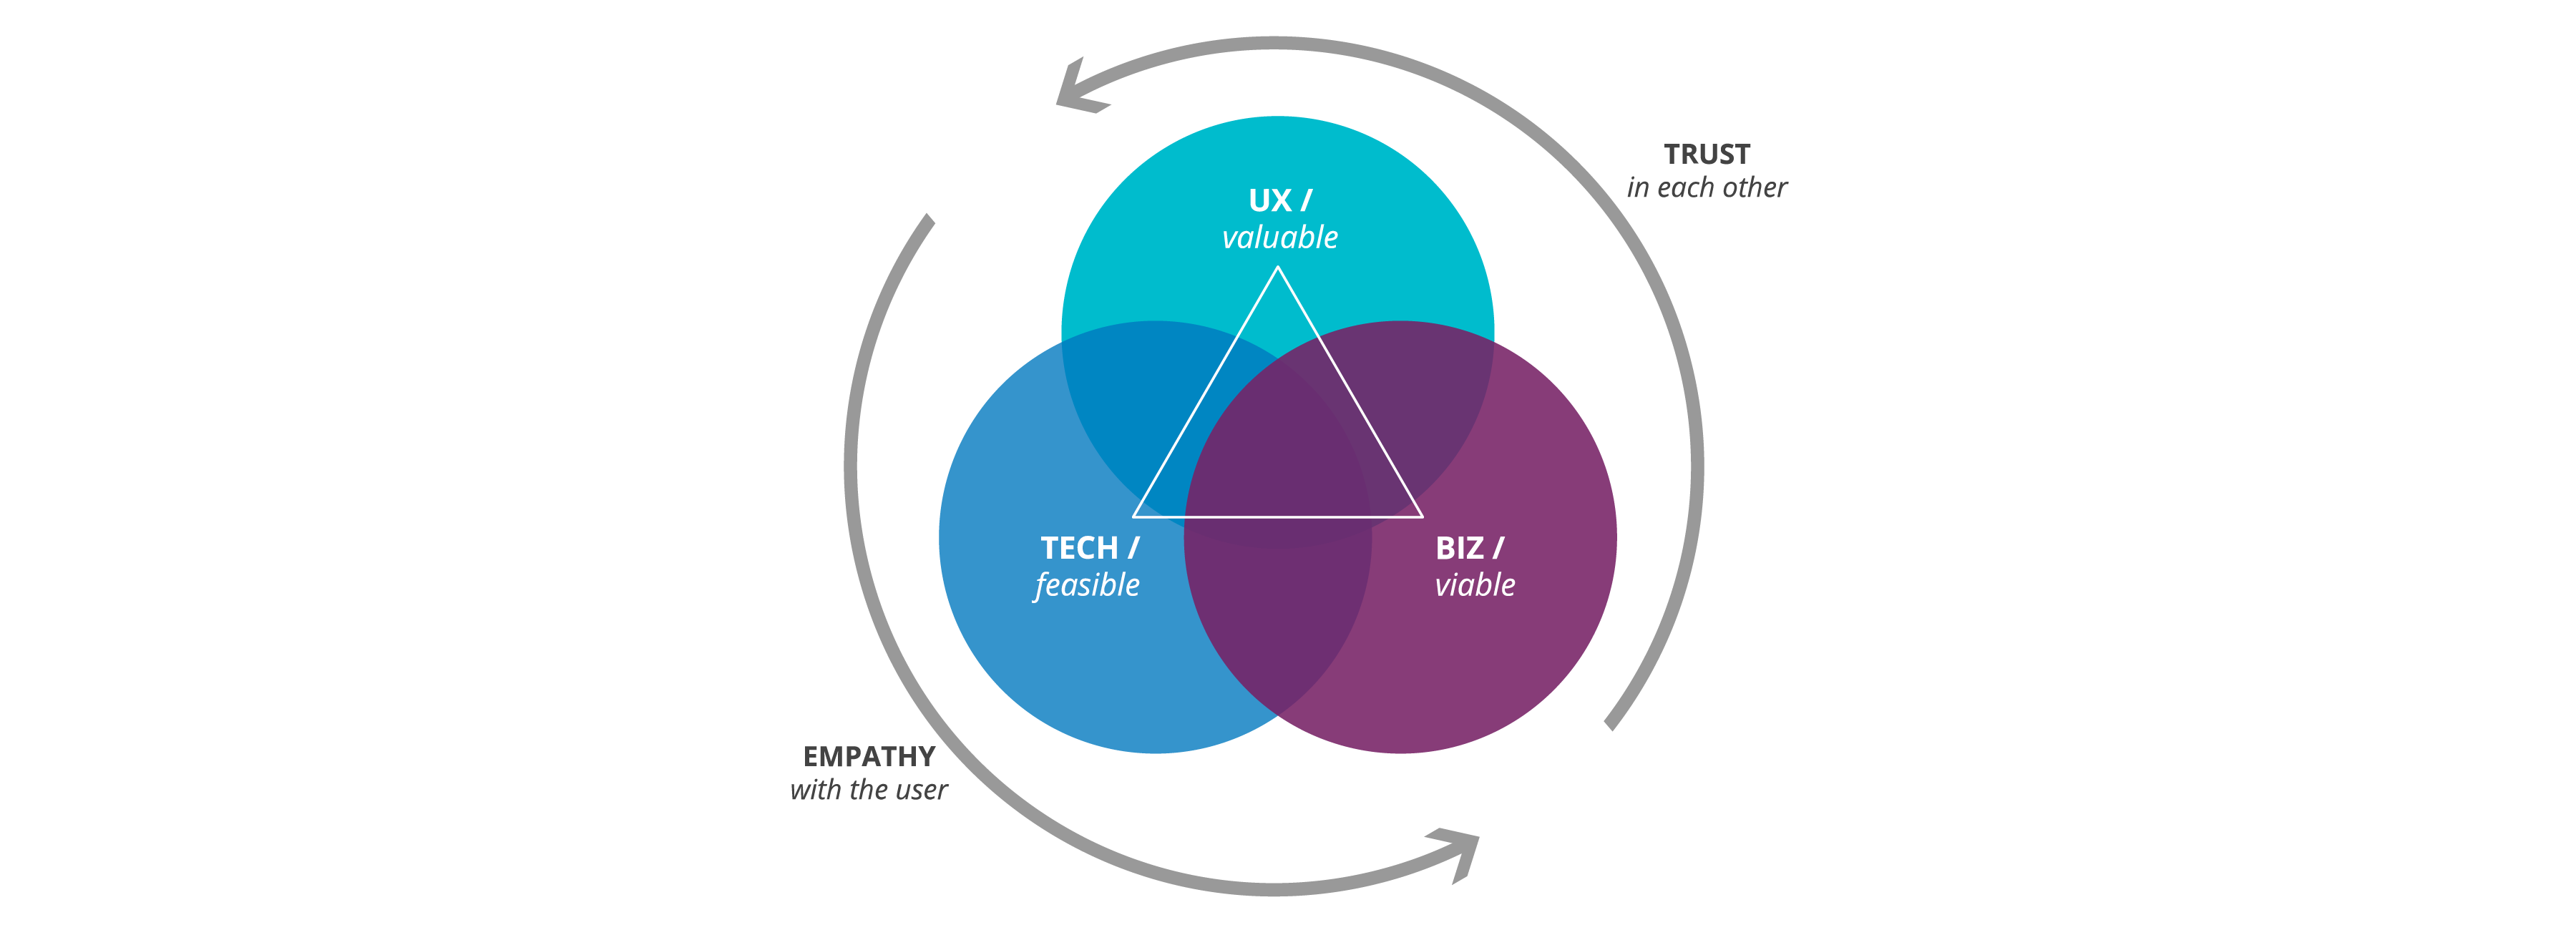 创新的三个透镜:一个三圆维恩图包含等量的UX(有价值的)，Biz(可行的)，Tech(可行的)，由一个三角形连接。外侧有两个逆时针方向的圆形箭头，表示与用户感同身受并相互信任。